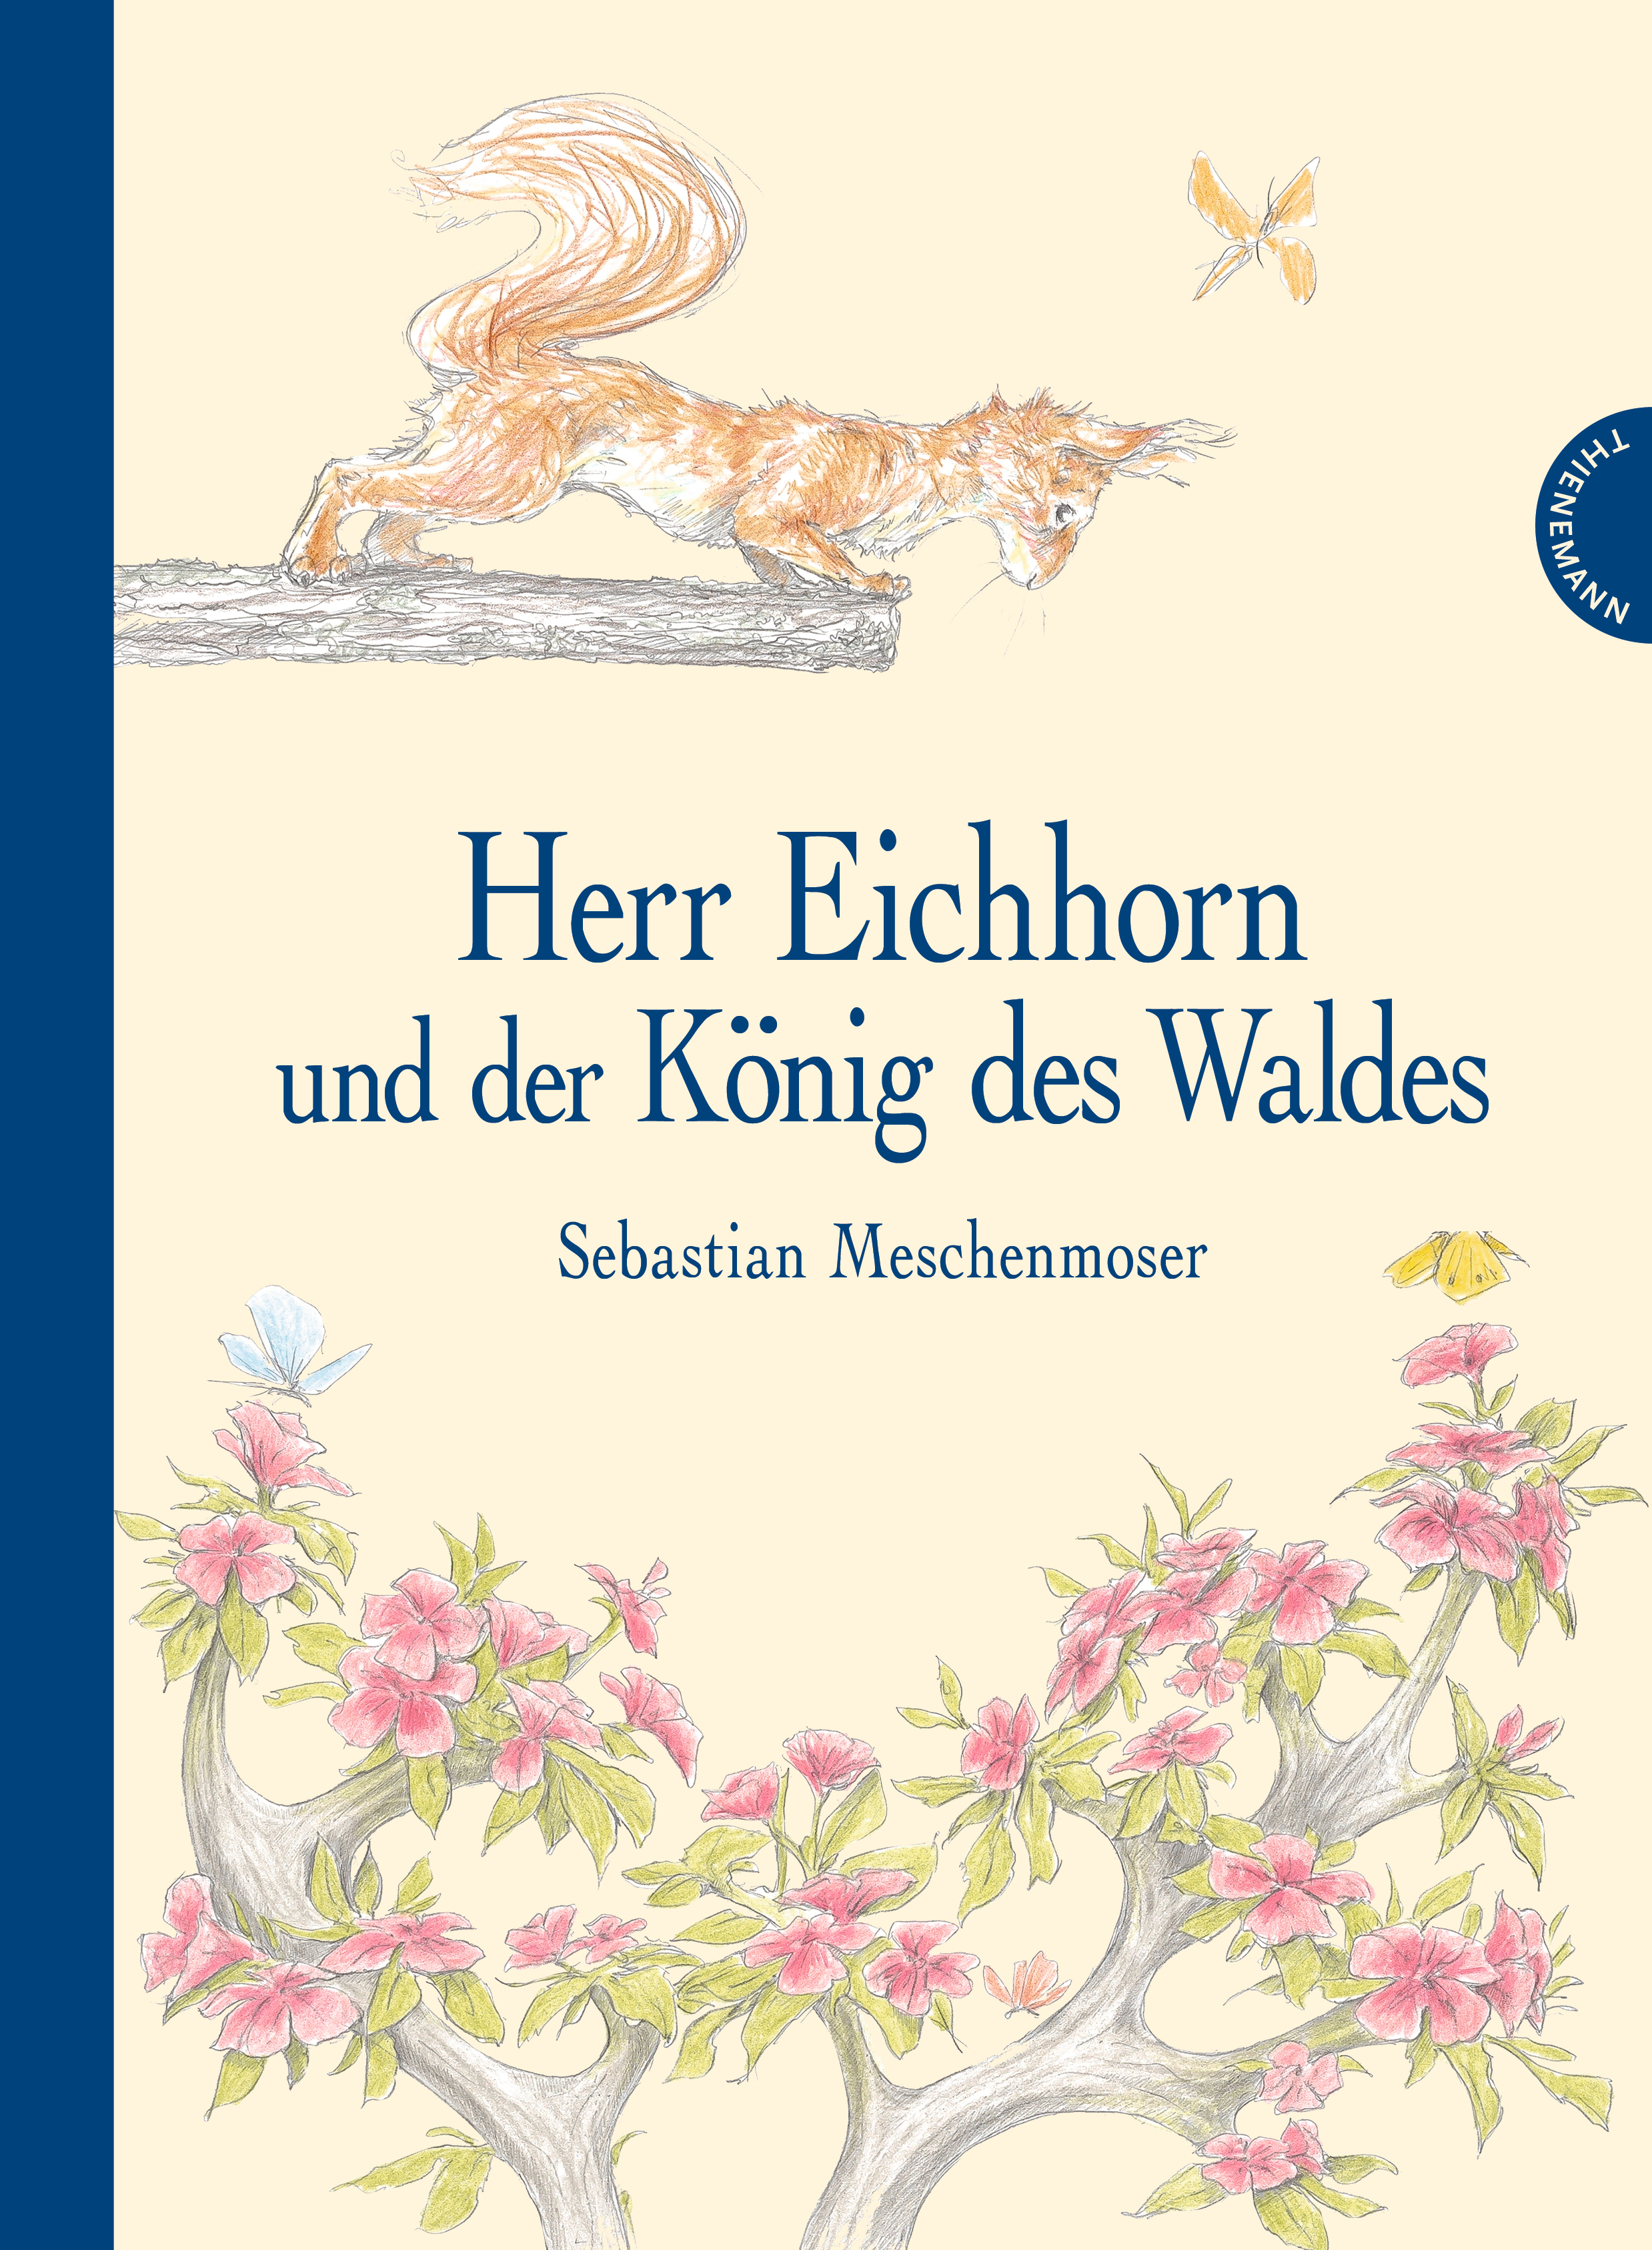 “Herr Eichhorn und der König des Waldes” von Sebastian Meschenmoser (2015)